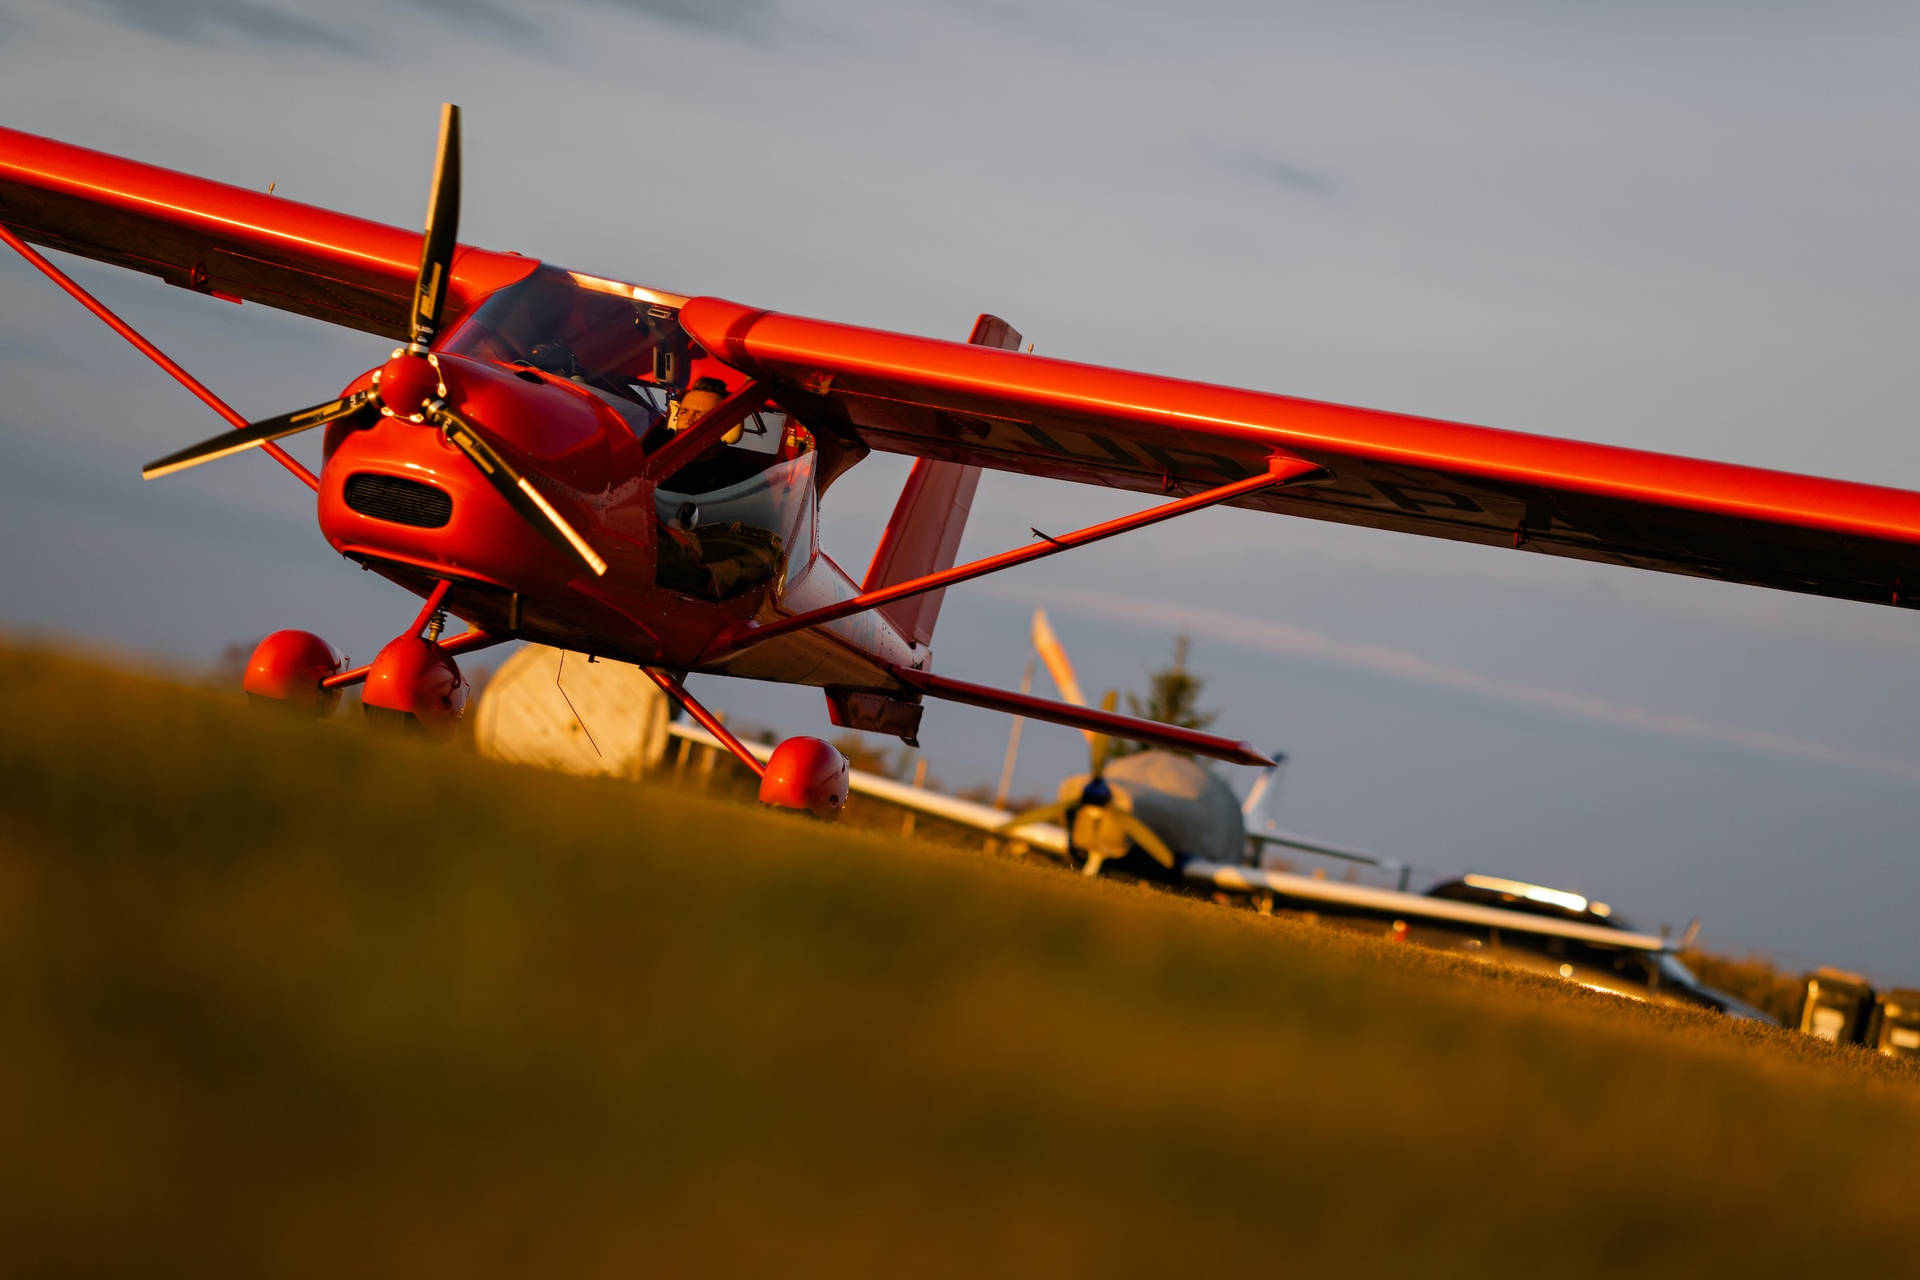 Amazing Red Bi-plane Model Soaring In The Sky Wallpaper